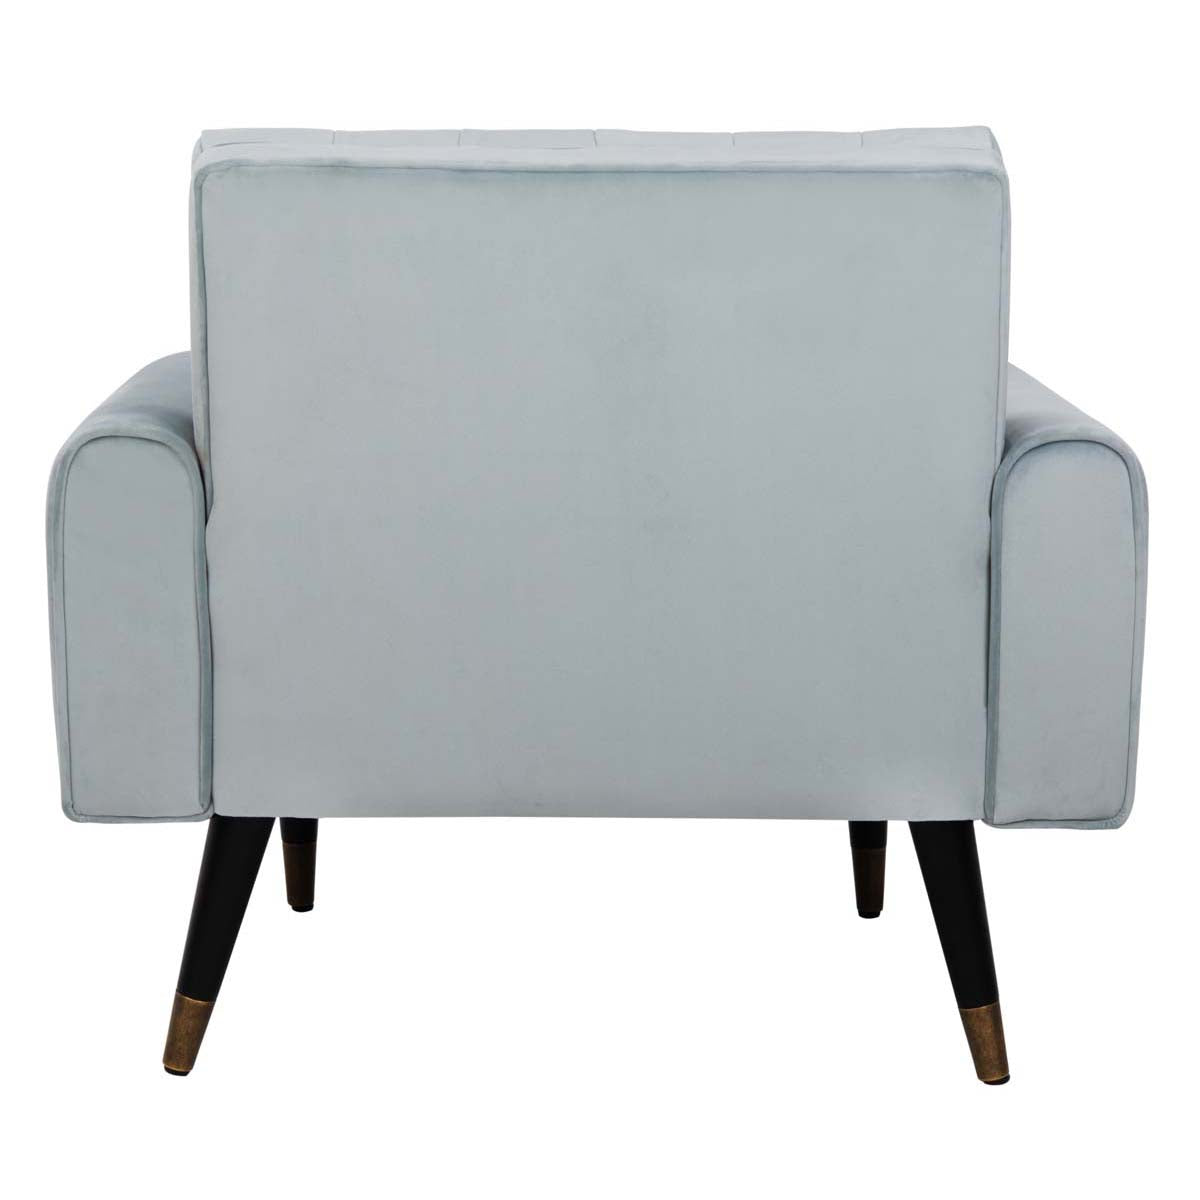 Safavieh Amaris Tufted Accent Chair , ACH4503 - Slate Blue/Black